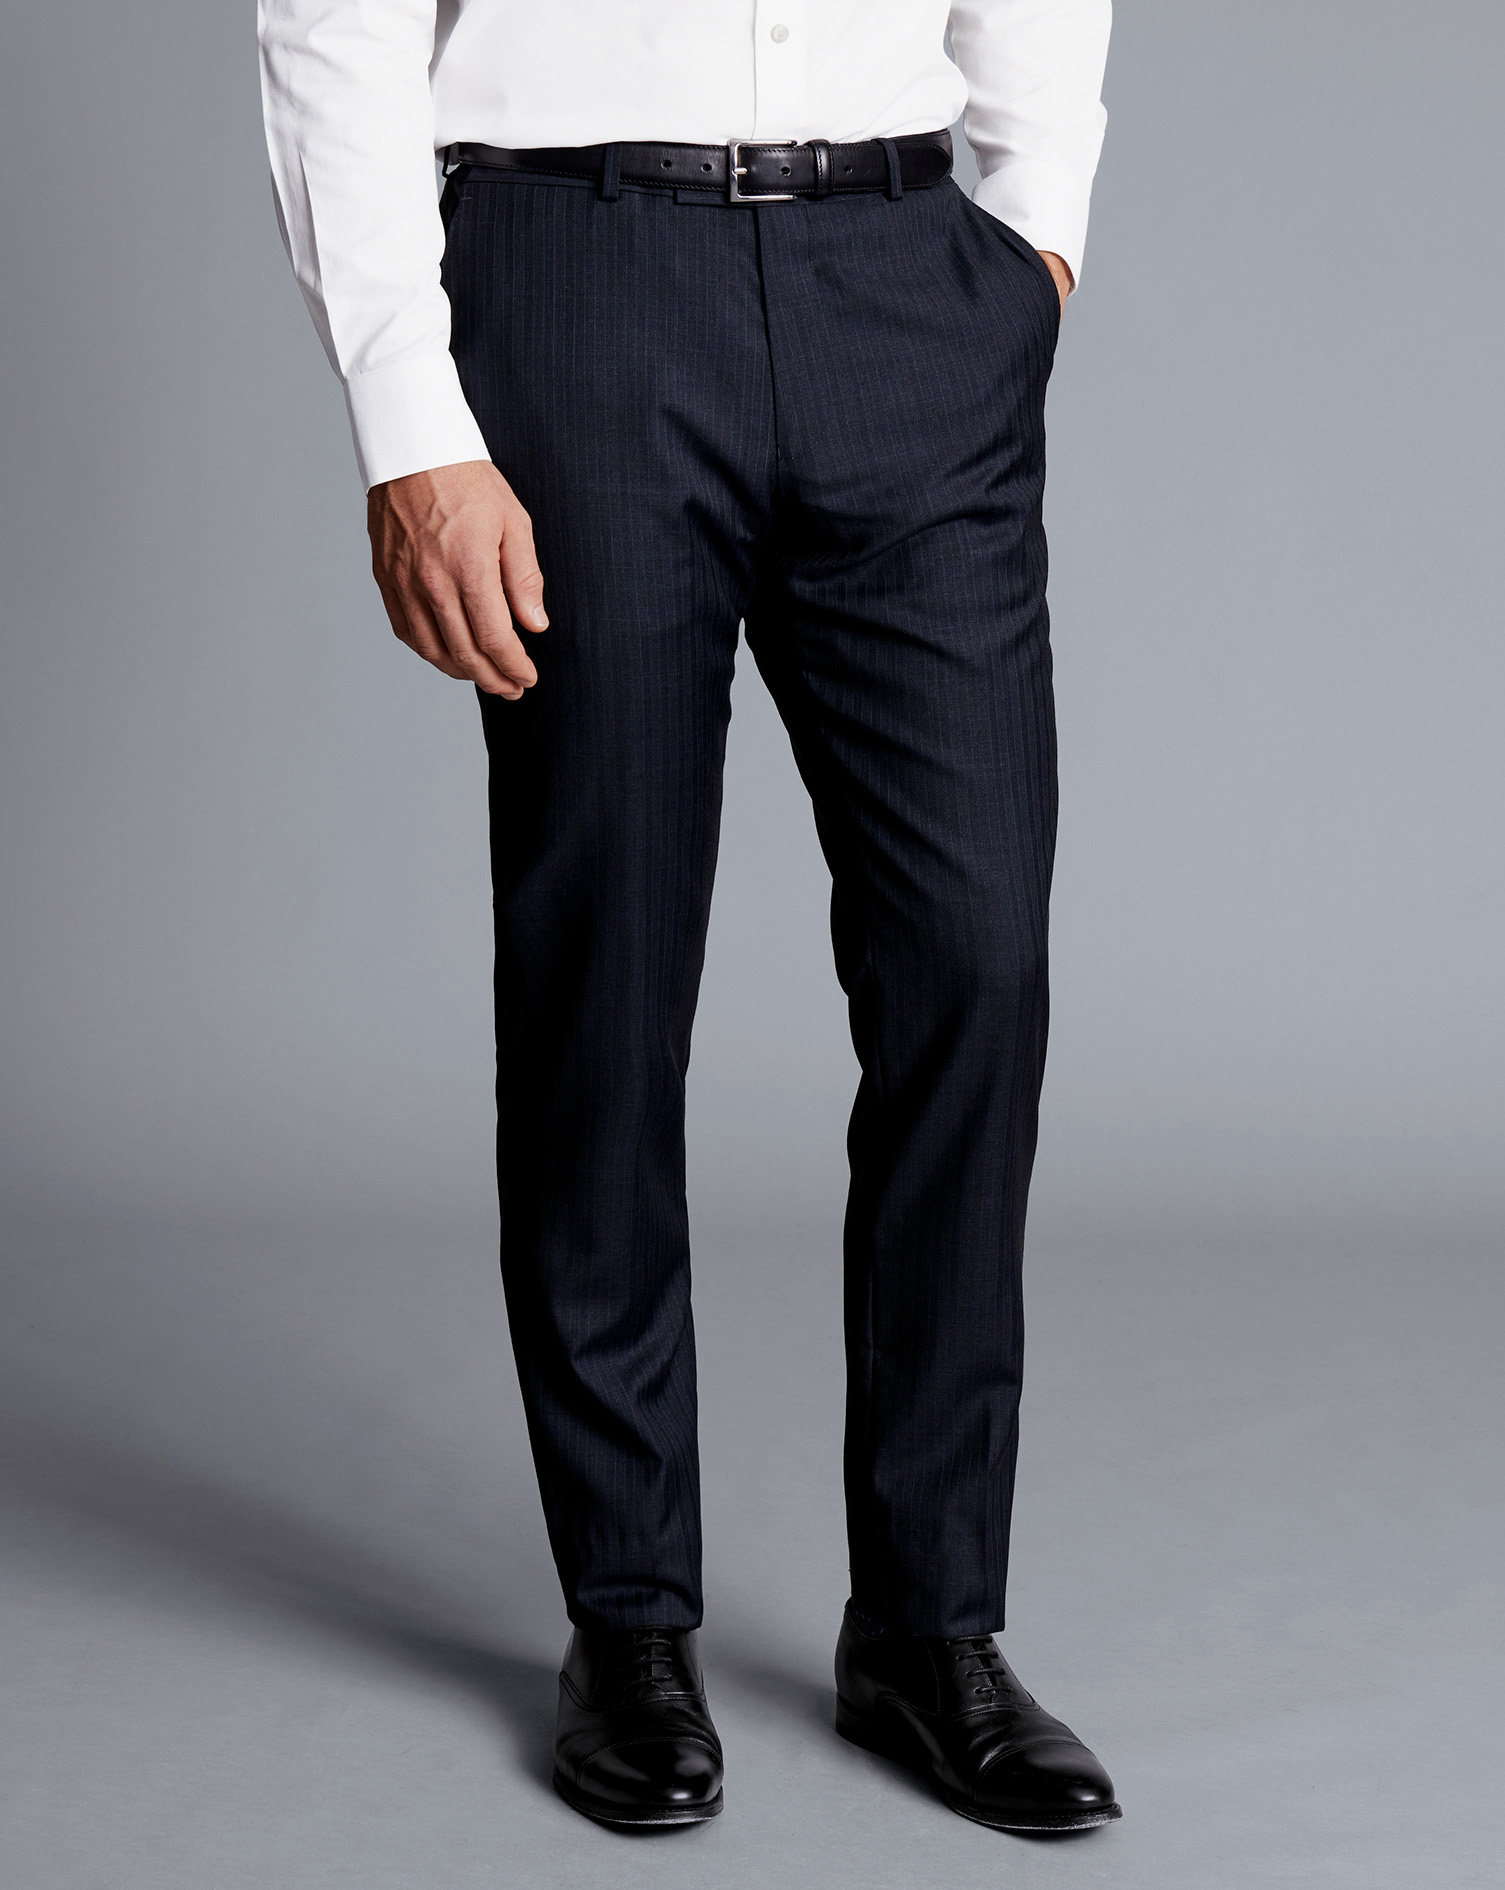 Men's Charles Tyrwhitt Stripe Suit Trousers - Ink Blue Size 34/38 Wool
